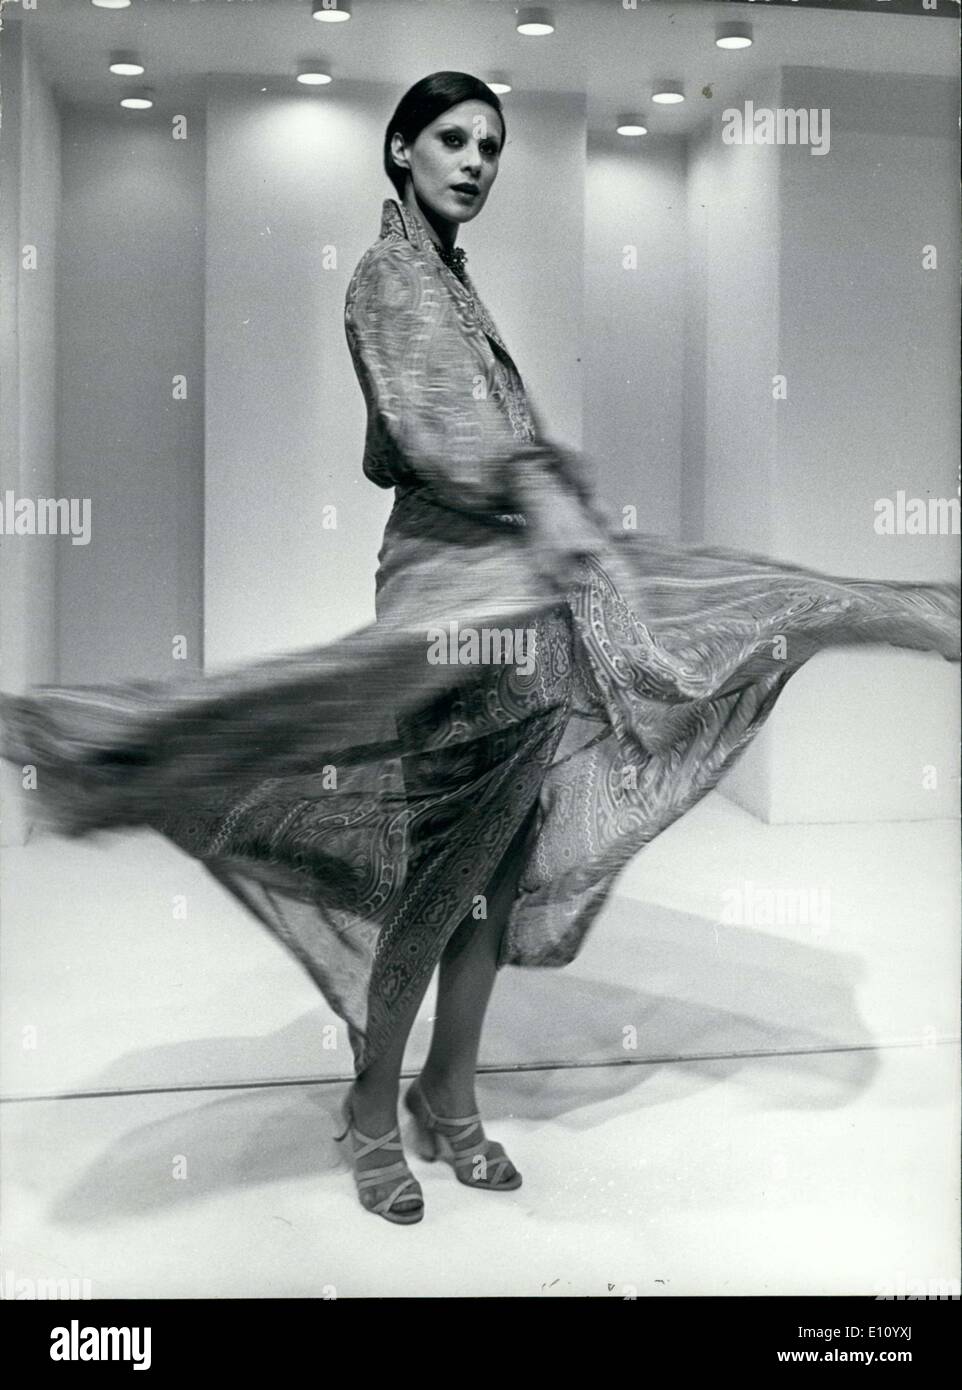 18 ottobre 1974 - Modello indossa un mantello in chiffon con disegni di Persiano a bordeaux e malva. Design by Guy Laroche. Foto Stock